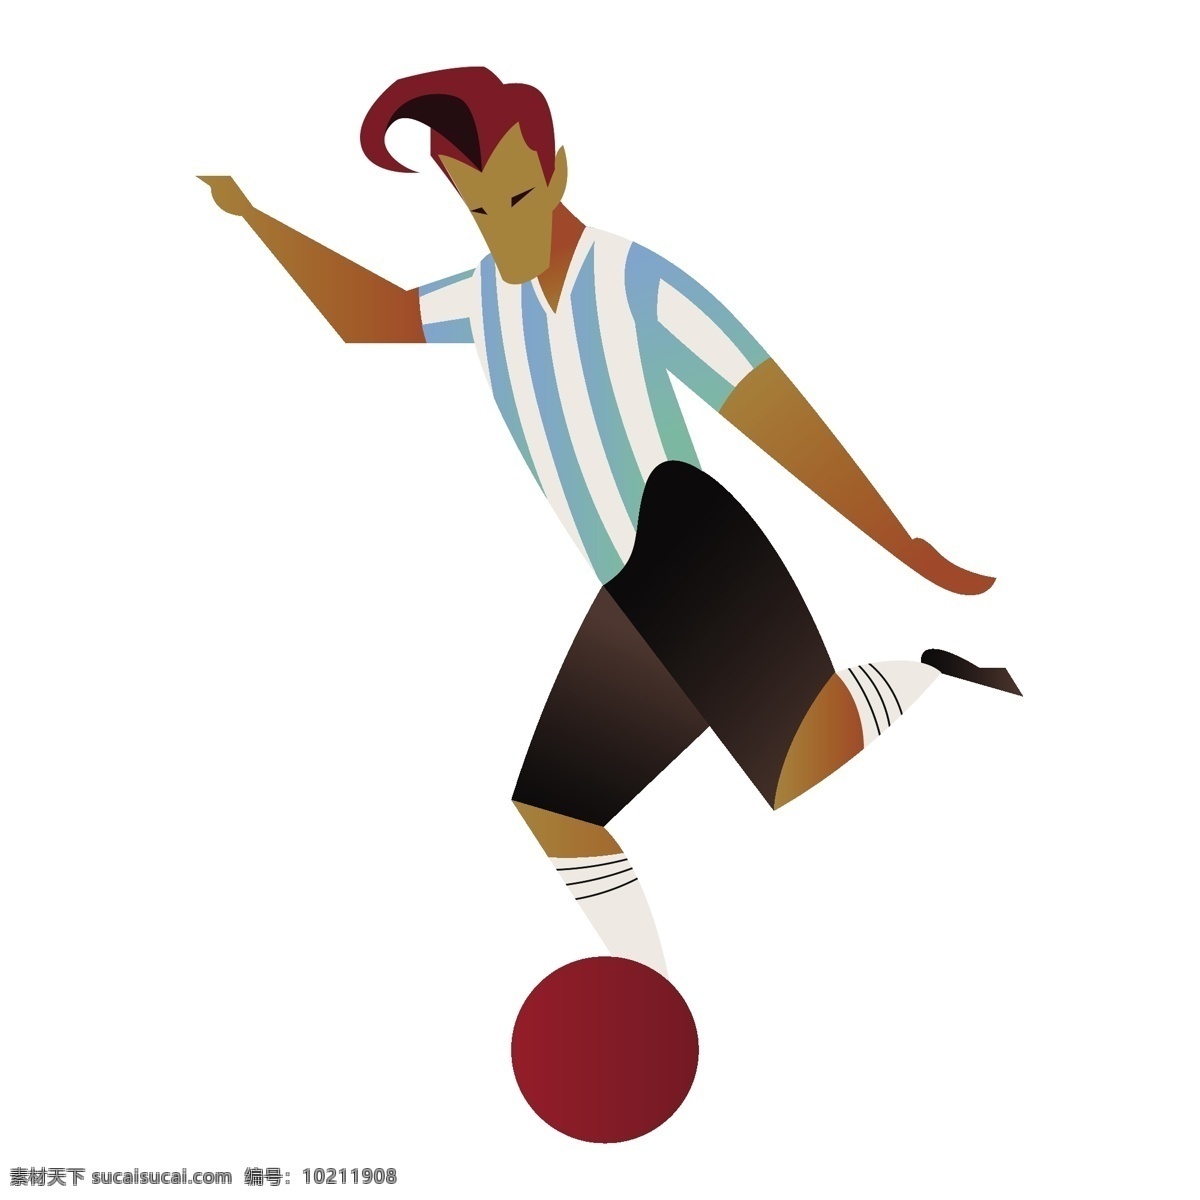 扁平化 阿根廷 球员 矢量 世界杯 卡通 卡通世界杯 阿根廷球员 球赛 卡通球赛 卡通球员